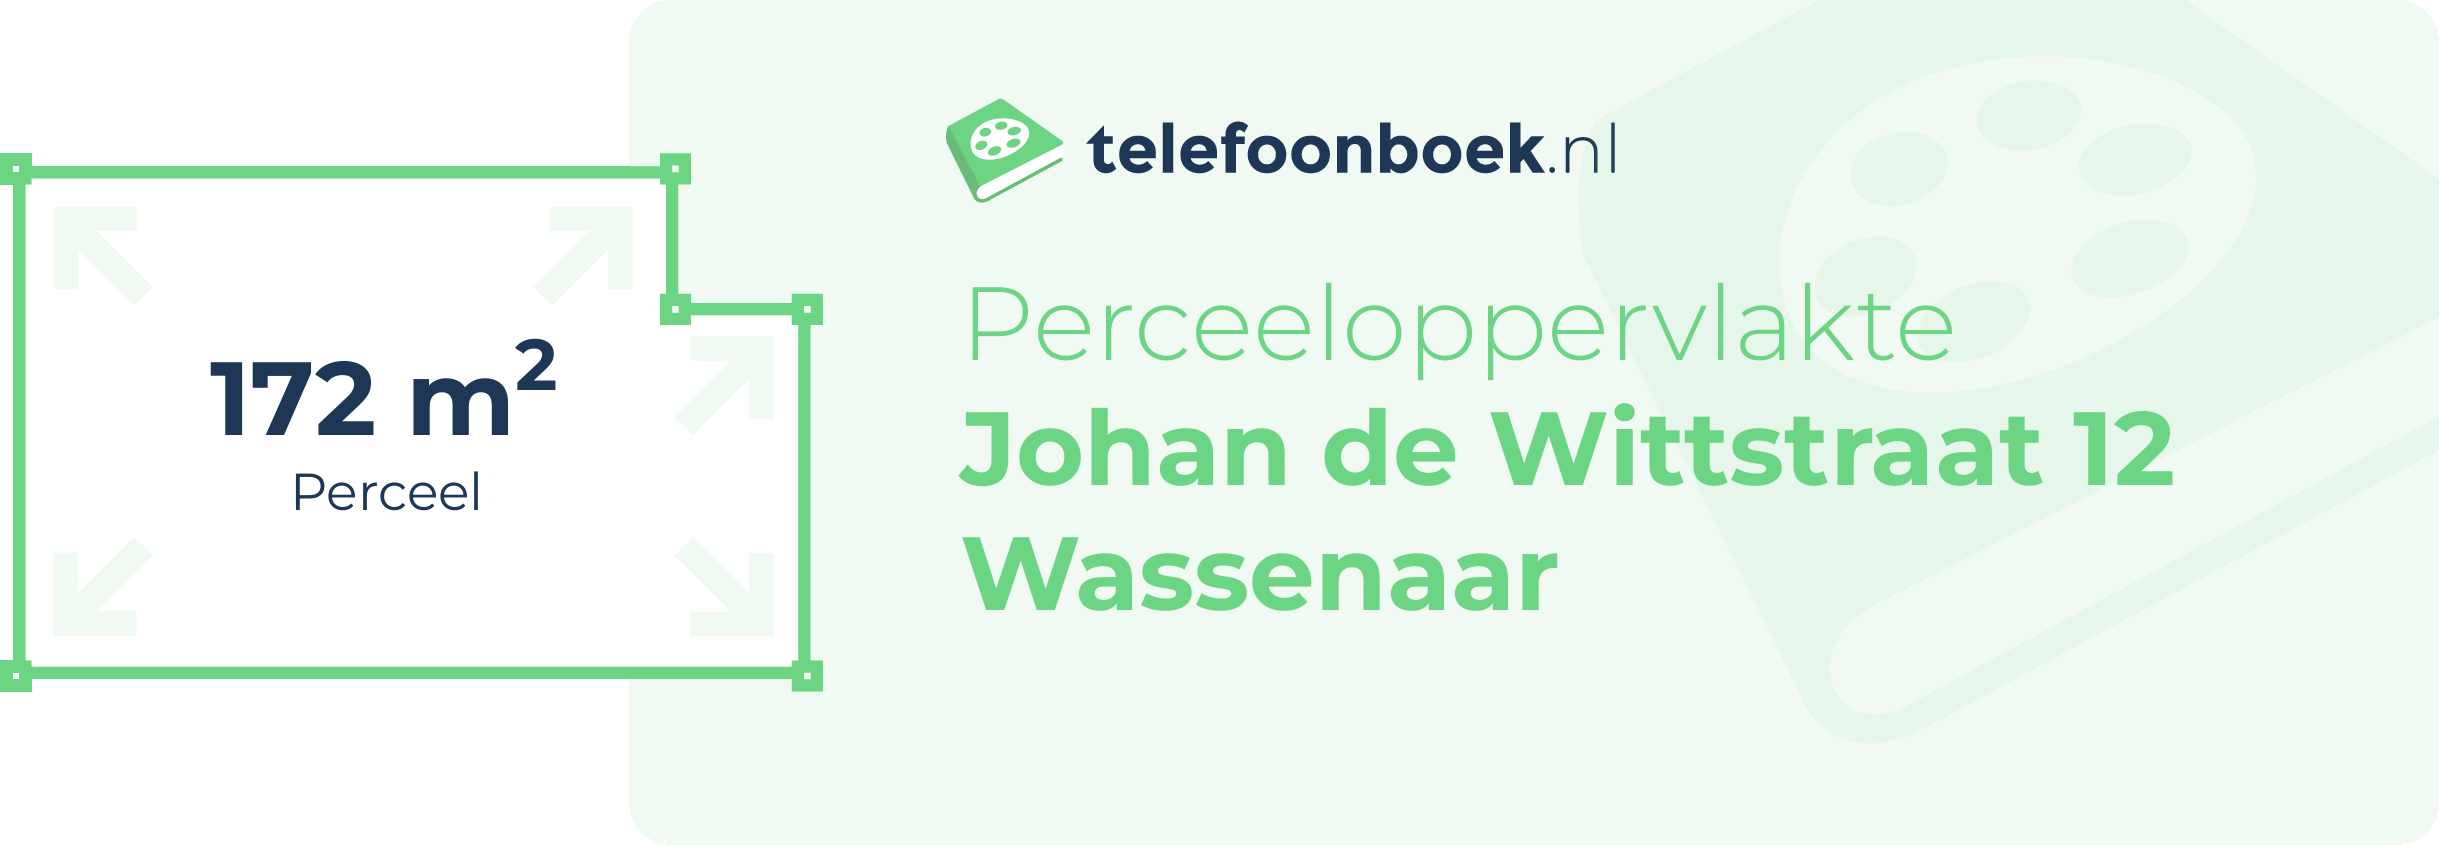 Perceeloppervlakte Johan De Wittstraat 12 Wassenaar